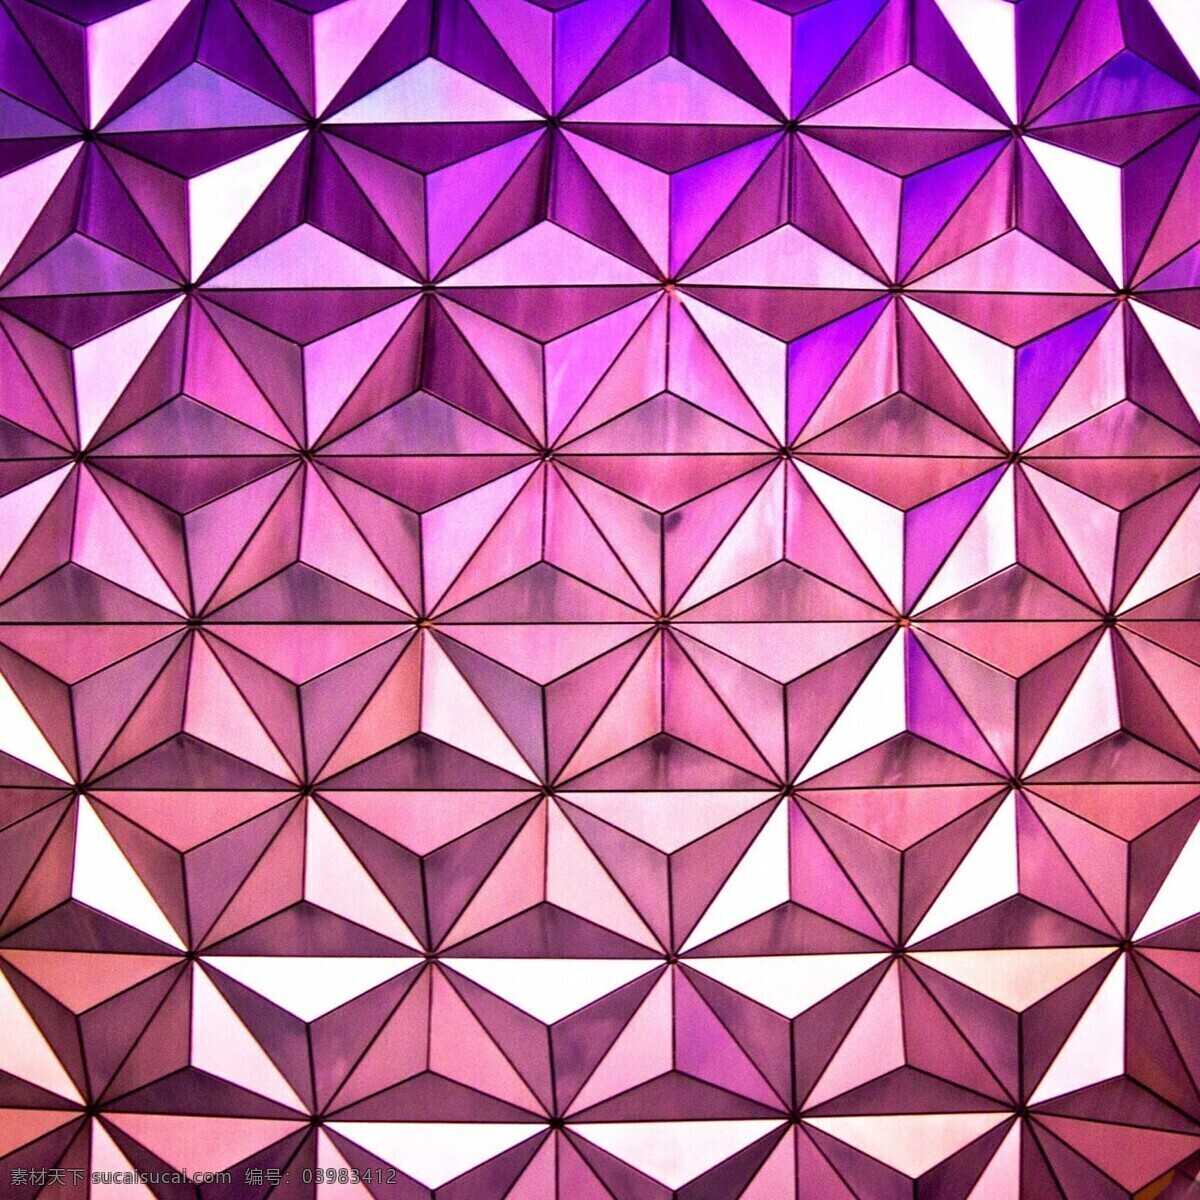 立体背景 线条 形状 三角形 阴影 背景 桌面 光影 菱形 三维 立体 紫色 高光 花边花纹 底纹边框